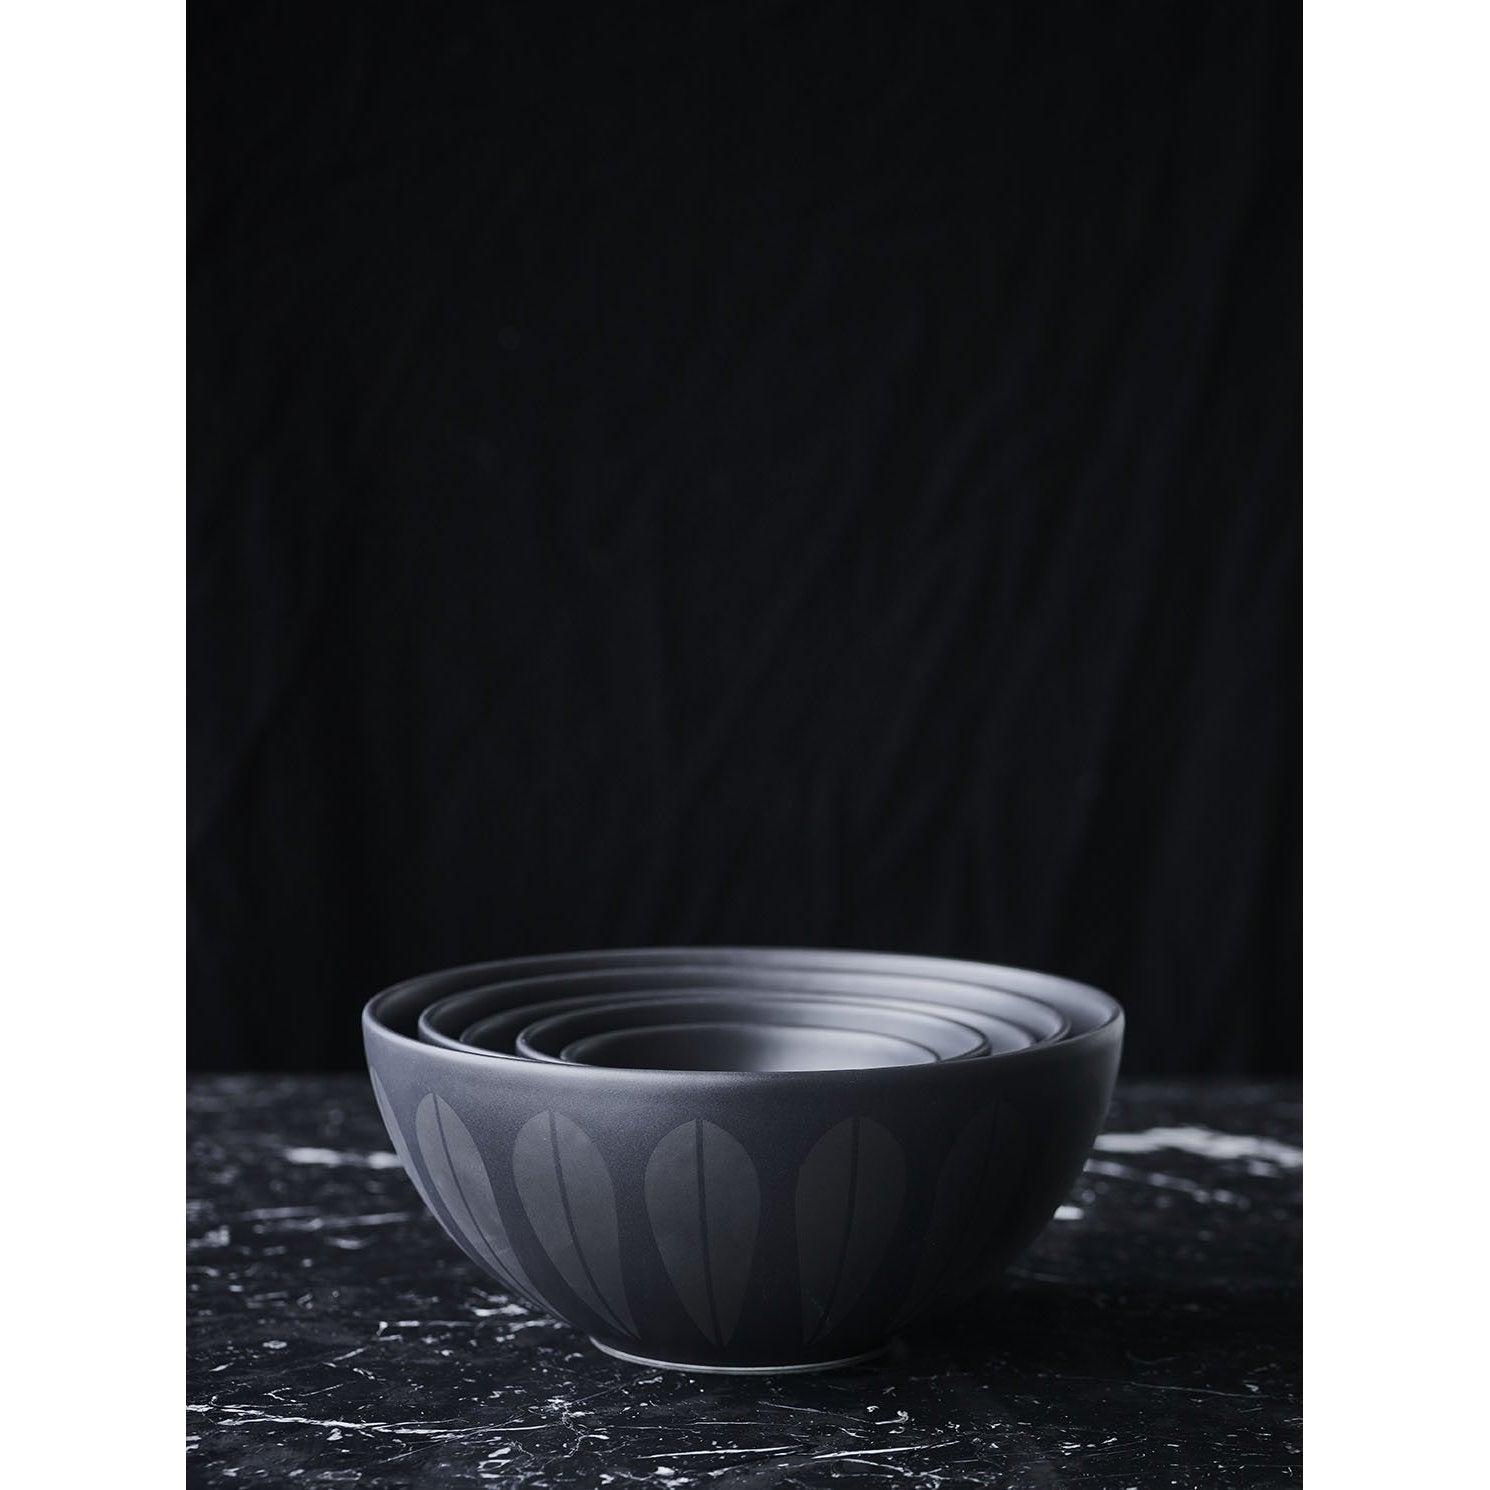 Lucie Kaas Arne Clausen Bowl Black, 12cm